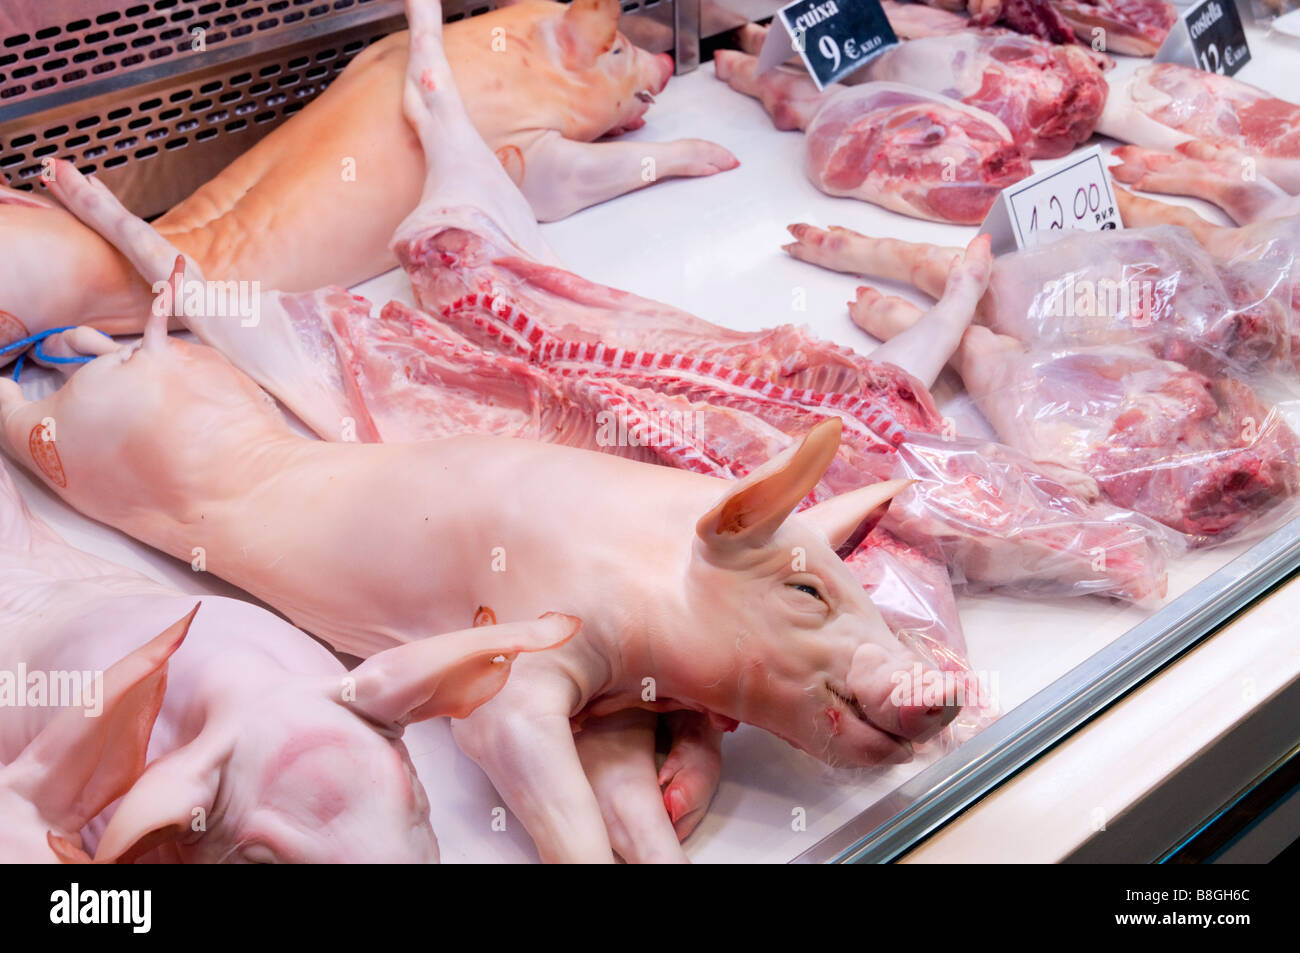 Suckling pigs for sale on a butcher stall in the Mercat de la Boqueria market Stock Photo